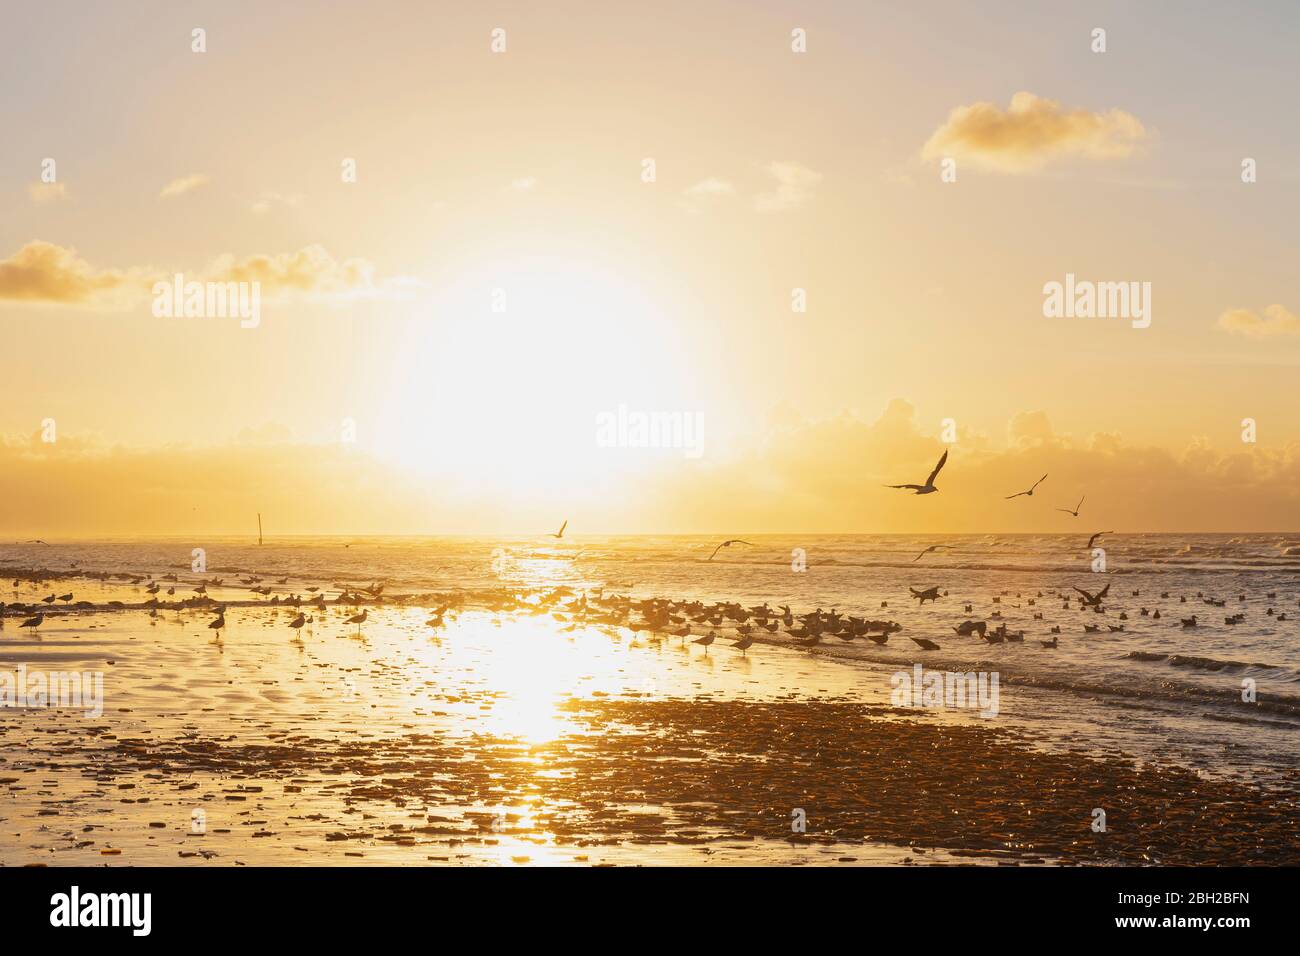 Floqué de silhouettes sur la rive à la plage contre le ciel orange au coucher du soleil, côte de la mer du Nord, Flandre, Belgique Banque D'Images